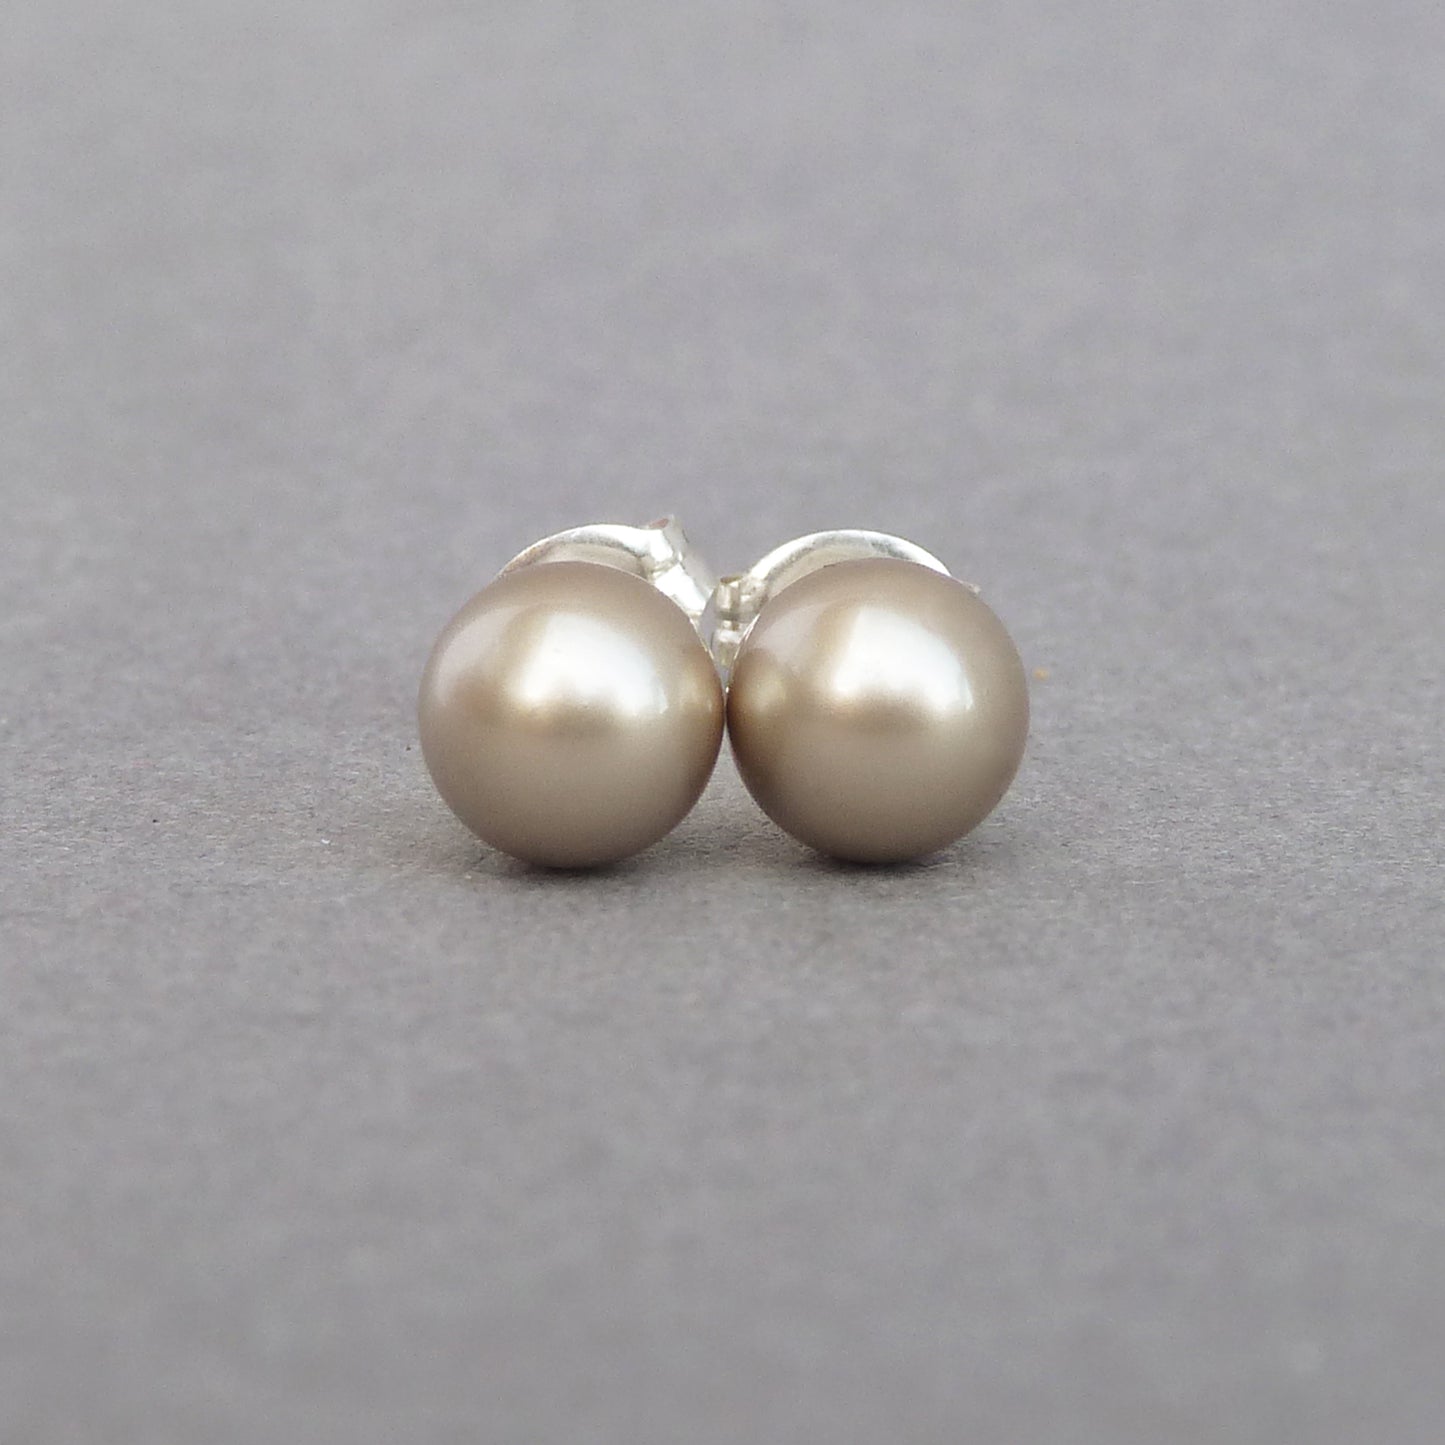 6mm coffee pearl stud earrings